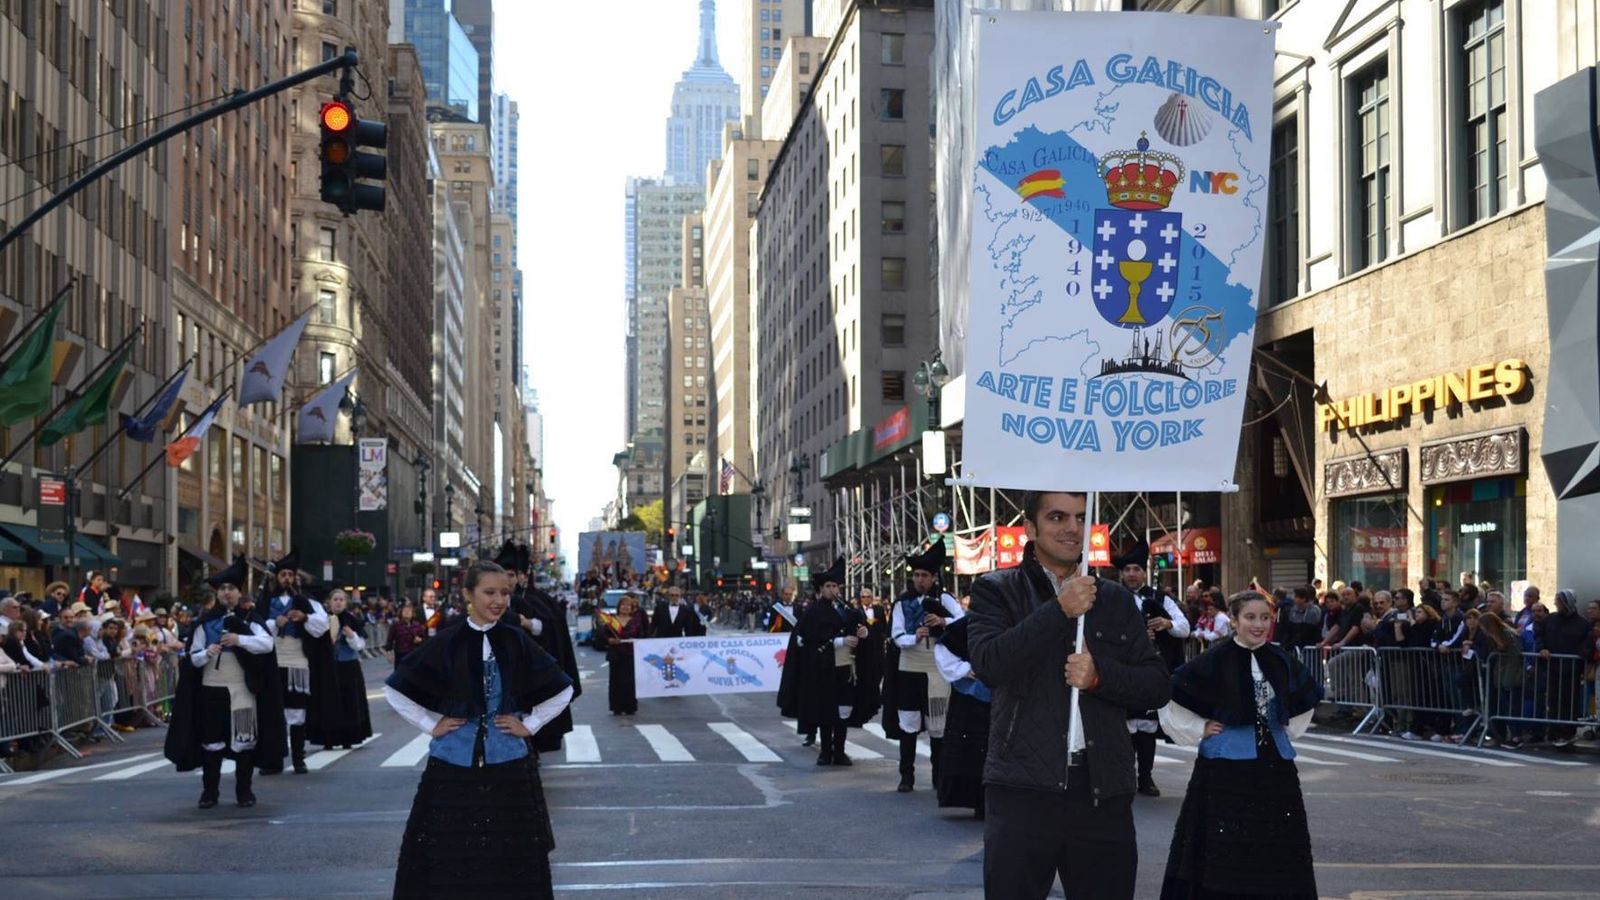 Foto: Marcha de la Casa de Galicia de Nueva York por la Quinta Avenida, en el día de San Patricio. (Casa Galicia Nueva York)